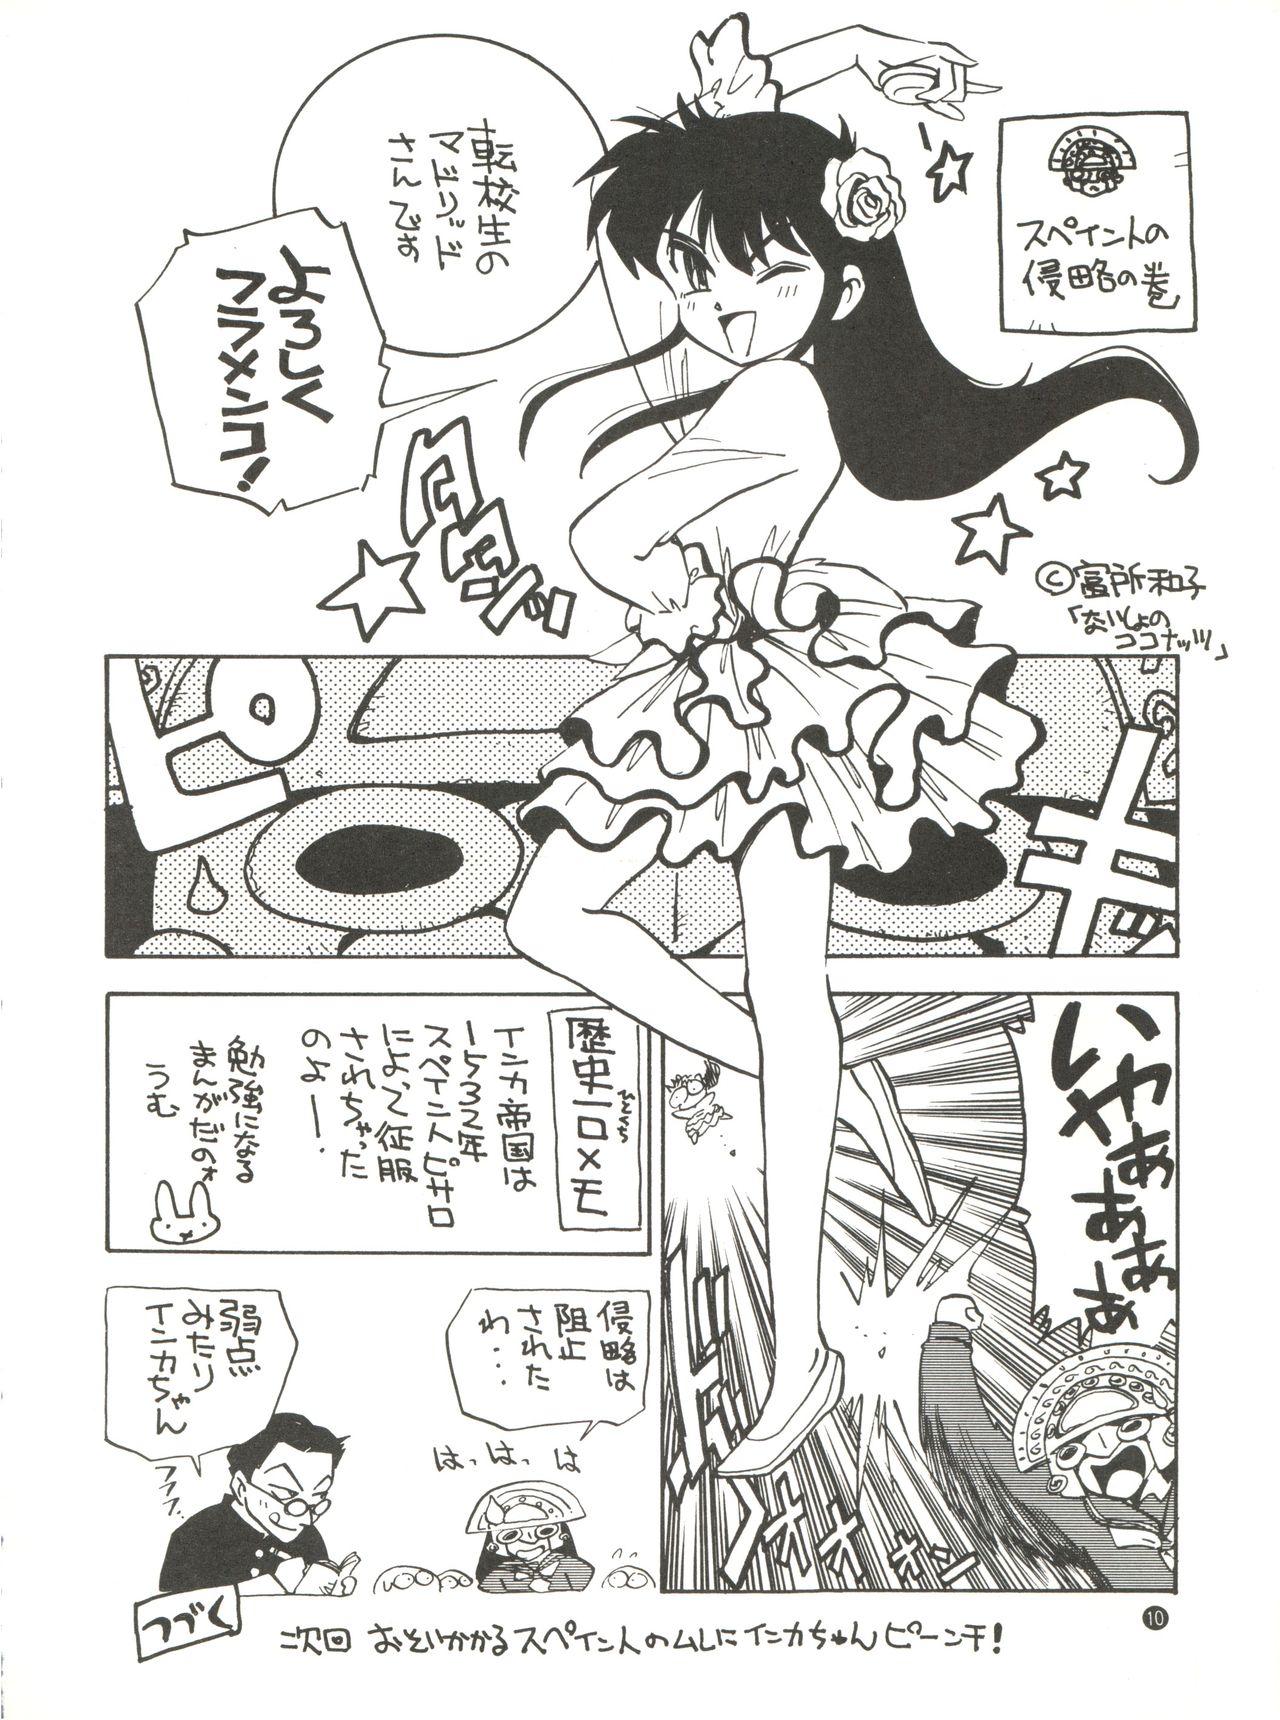 Closeups Konna ni Karakute Inca Teikoku Vol. 4 - Barcode fighter Scene - Page 10